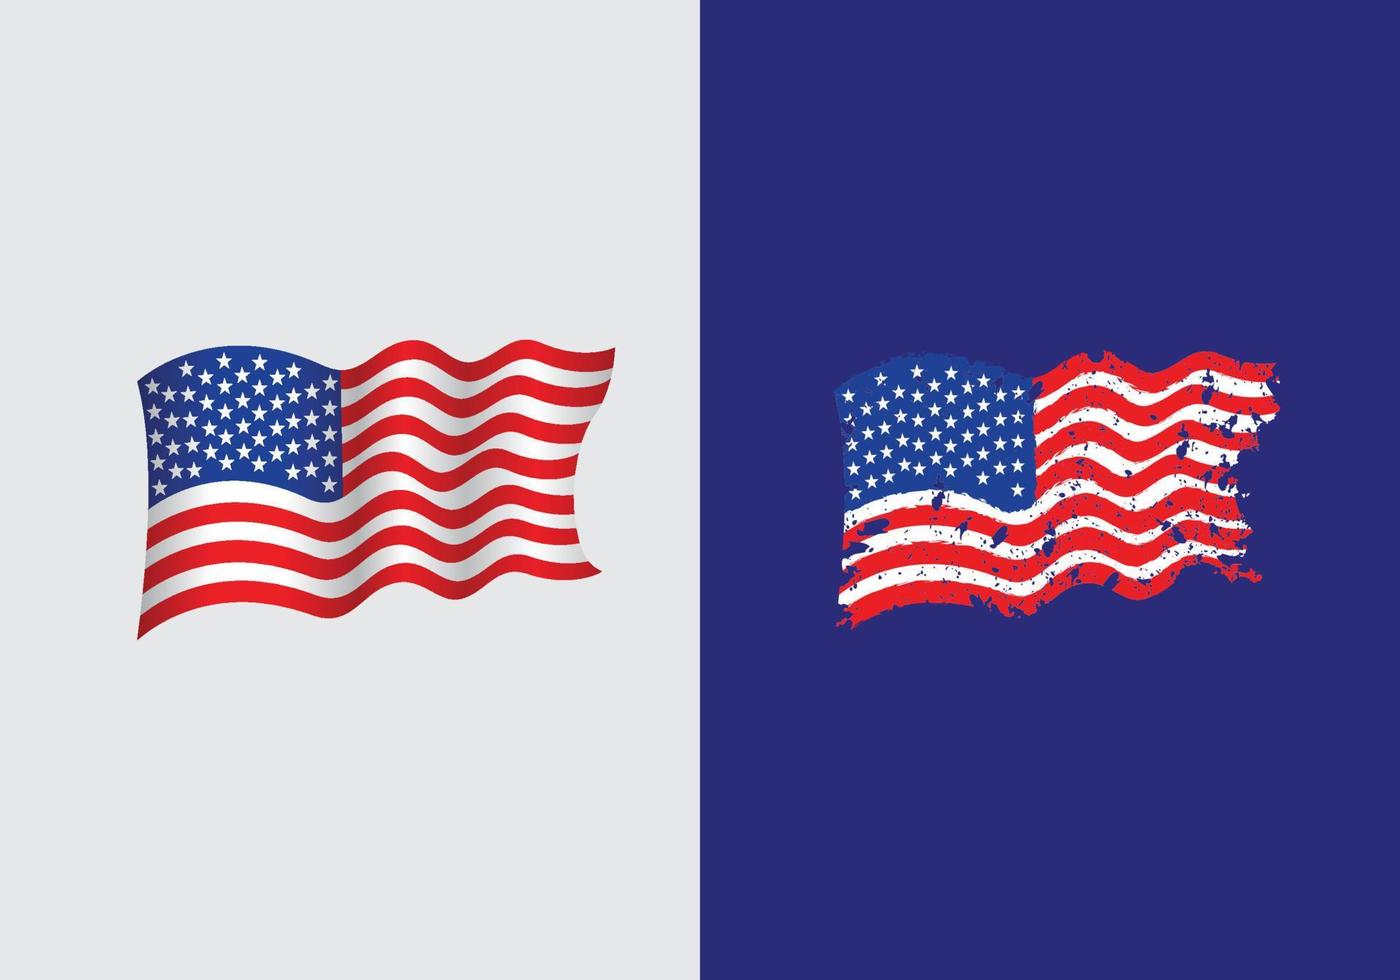 uni États de Amérique icône drapeau symbole signe vecteur